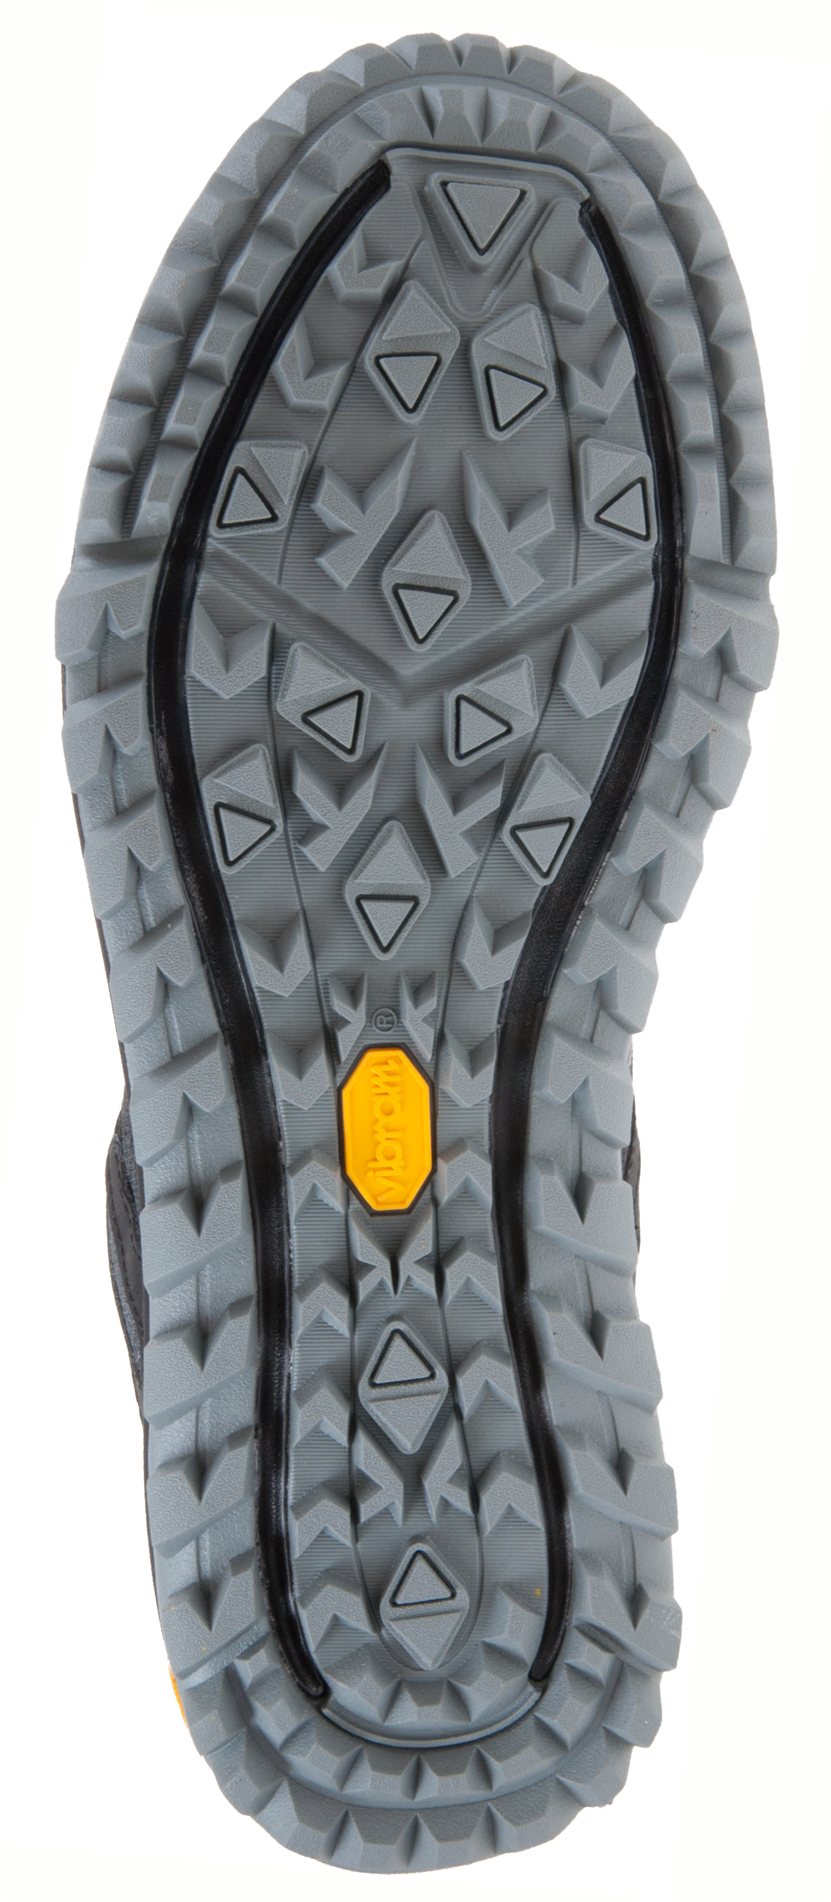 Merrell Nova Gore-Tex Black J48821 - Outdoor Shoes - Humphries Shoes